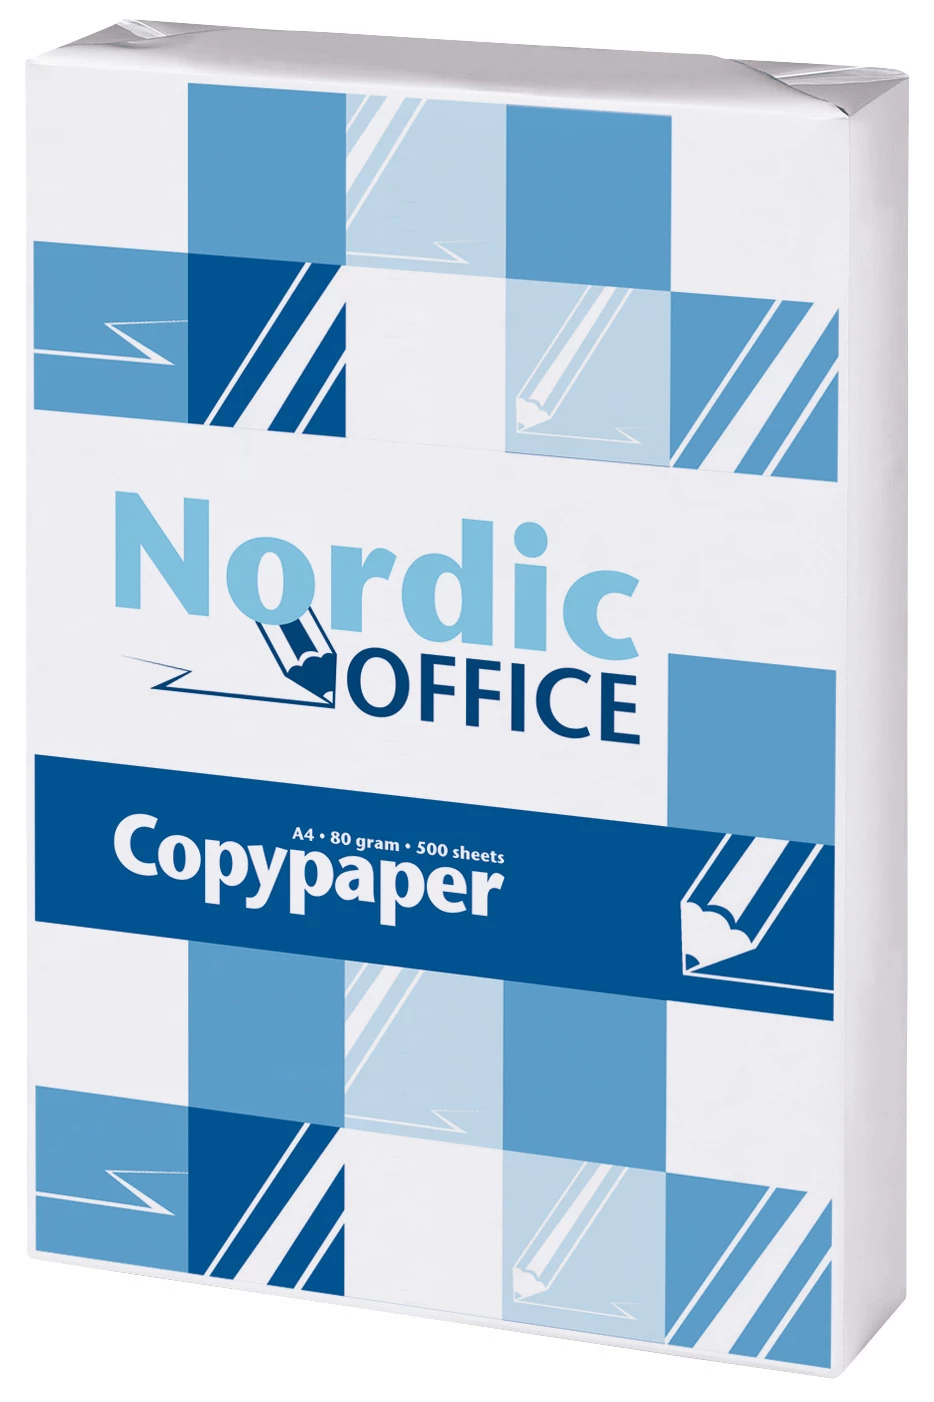 Kopieringspapper Nordic Office A3 500st/fp